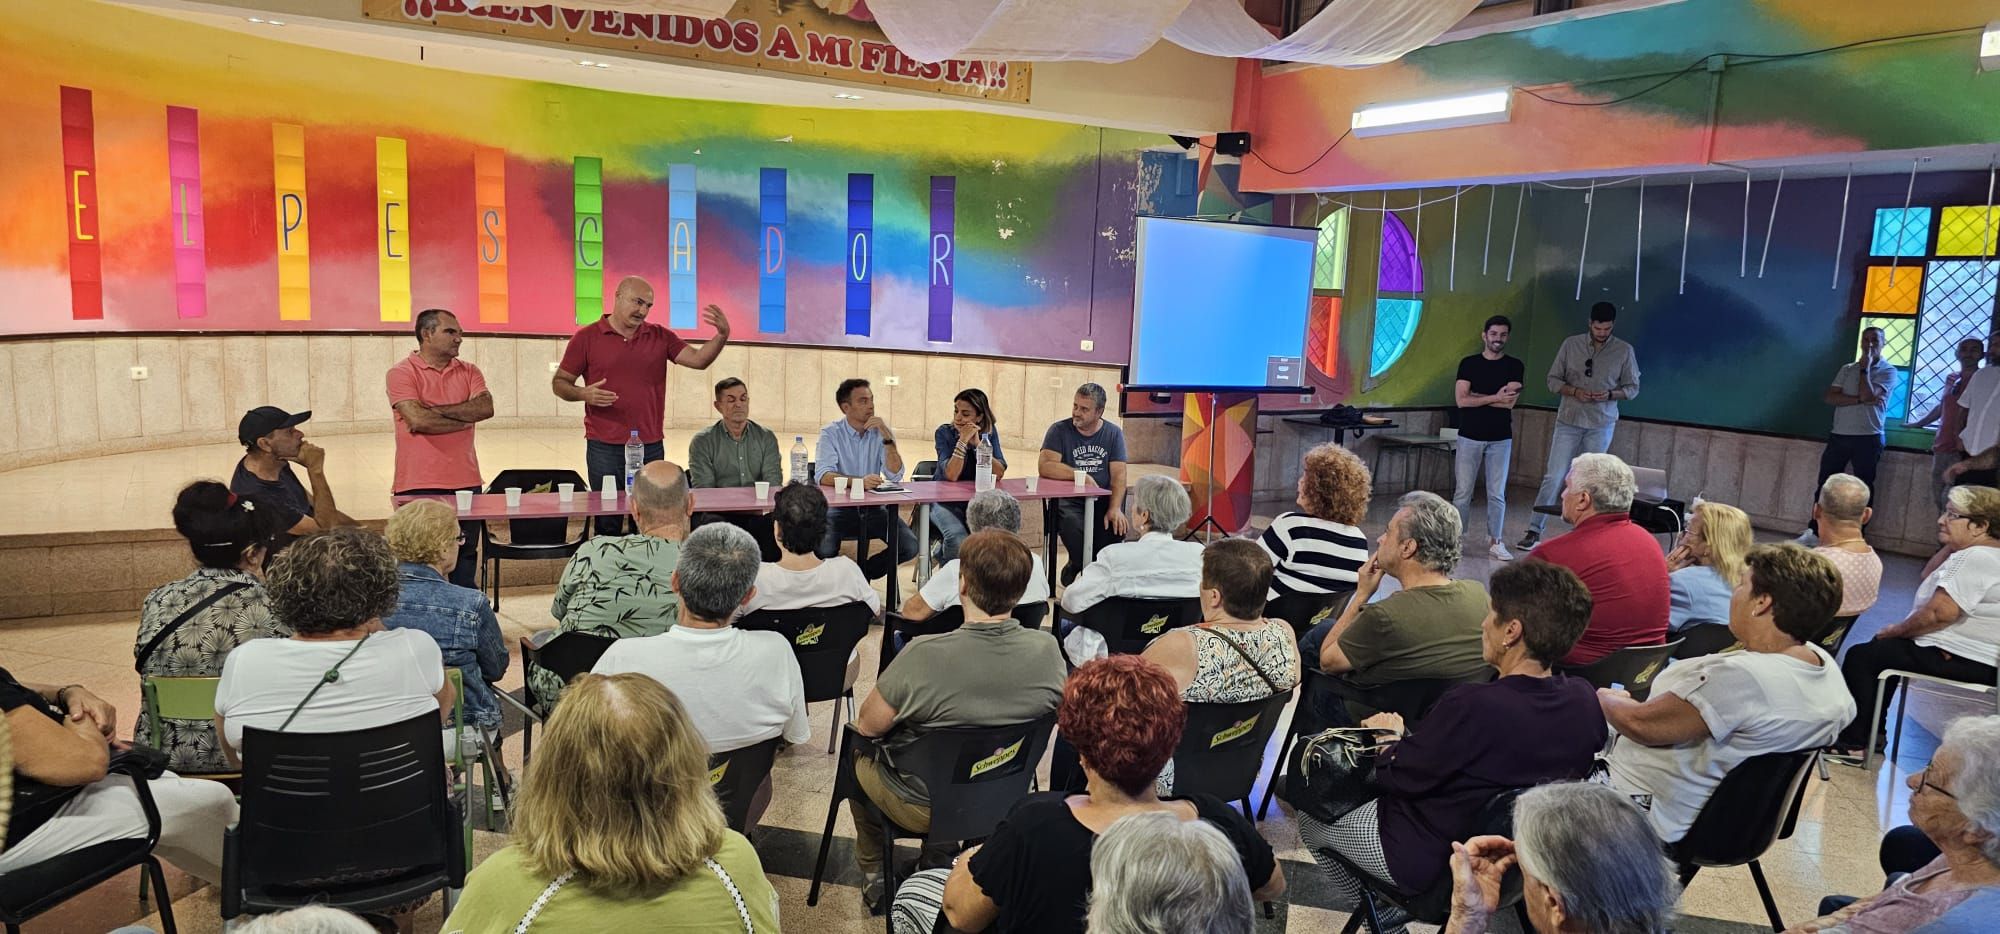 Histórica reunión para salvar el cementerio de San Andrés